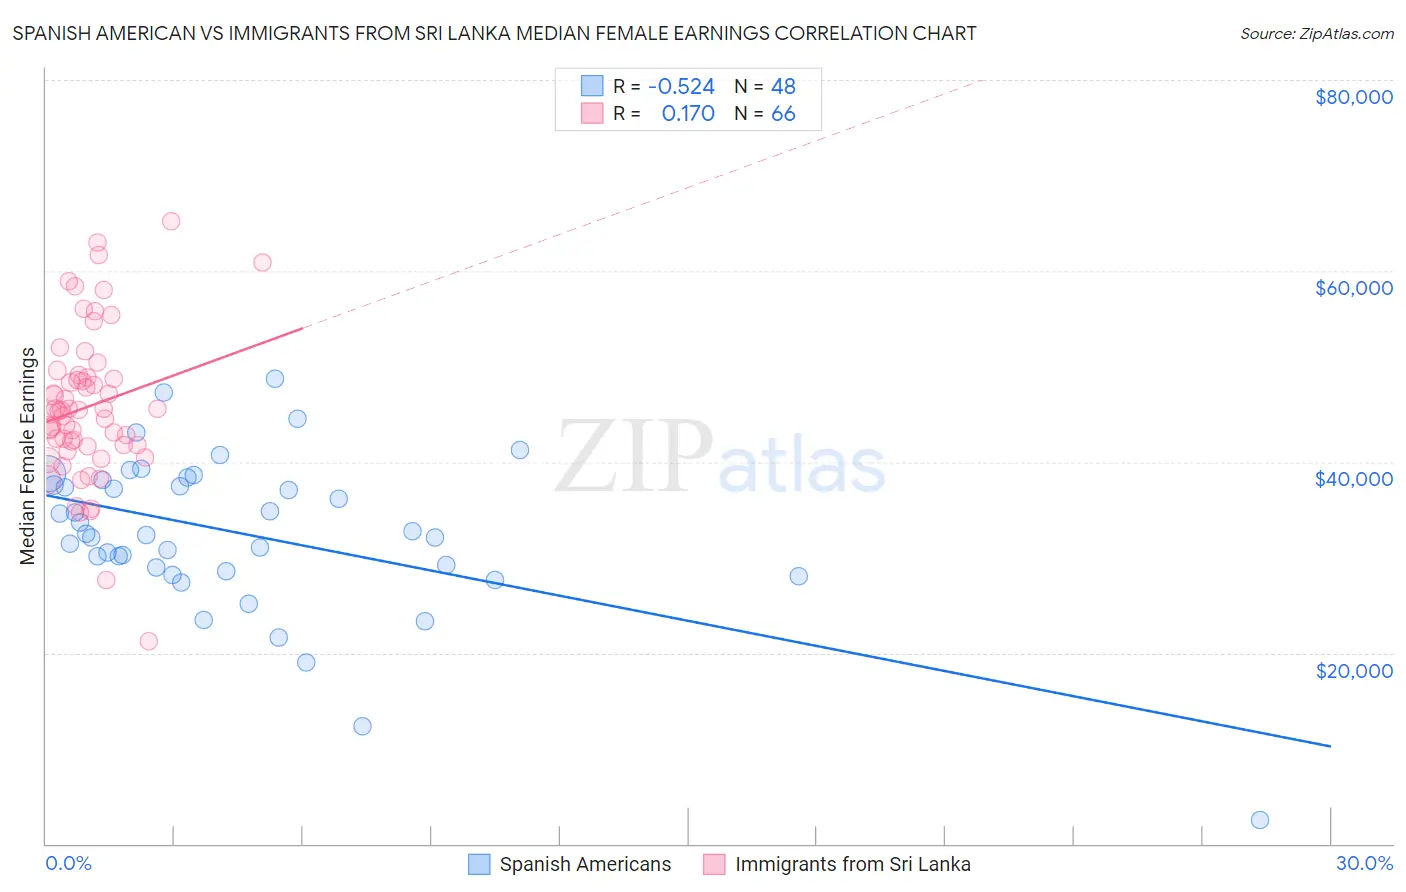 Spanish American vs Immigrants from Sri Lanka Median Female Earnings